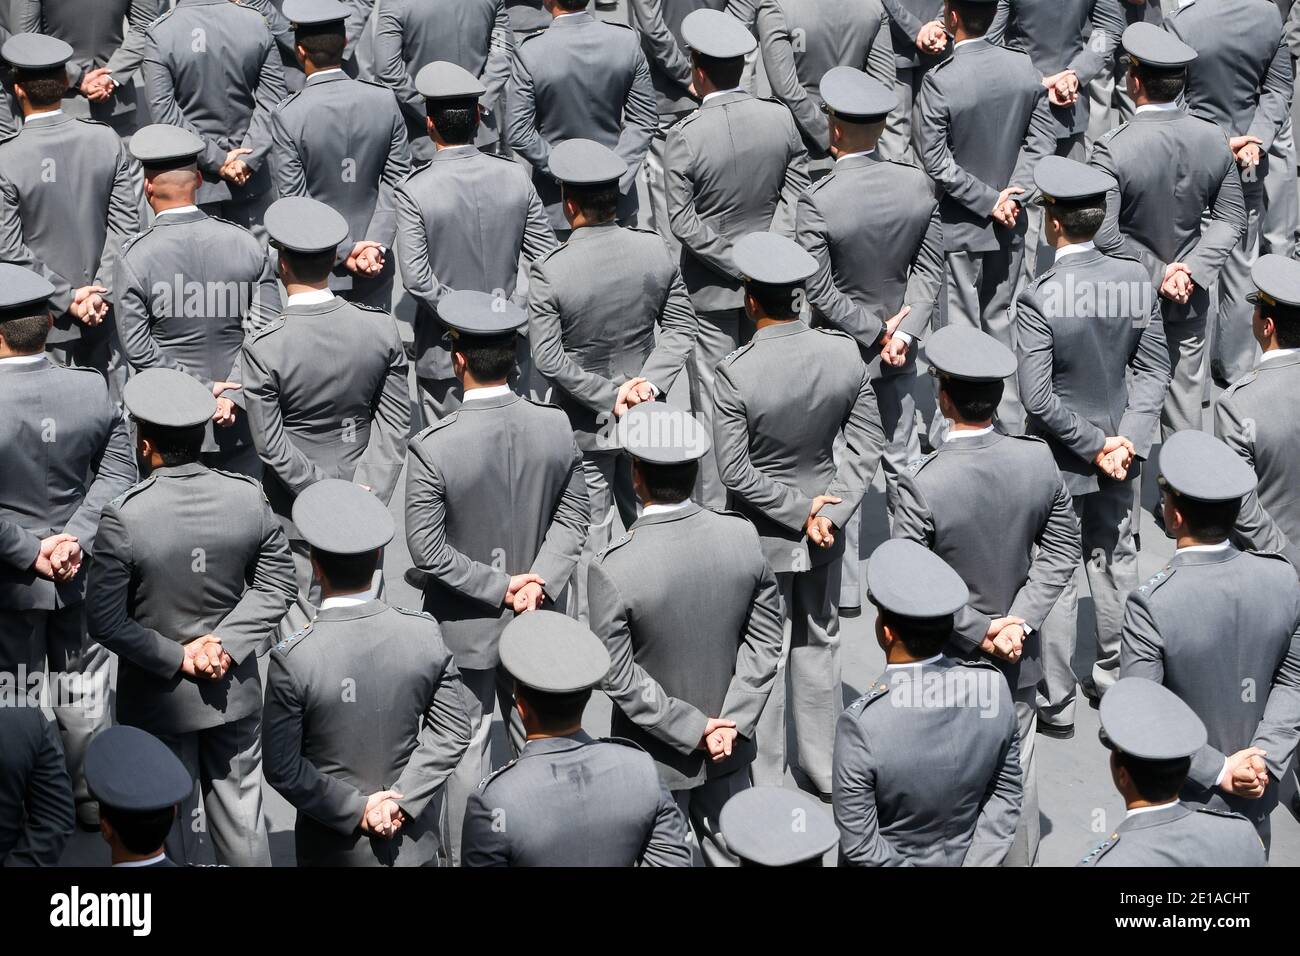 Militärische Armee Truppen in Form während der Zeremonie am Hauptquartier der Kapitänsakademie, hoher Blickwinkel. Bataillonsstab der Streitkräfte, im Hof gruppiert. Stockfoto